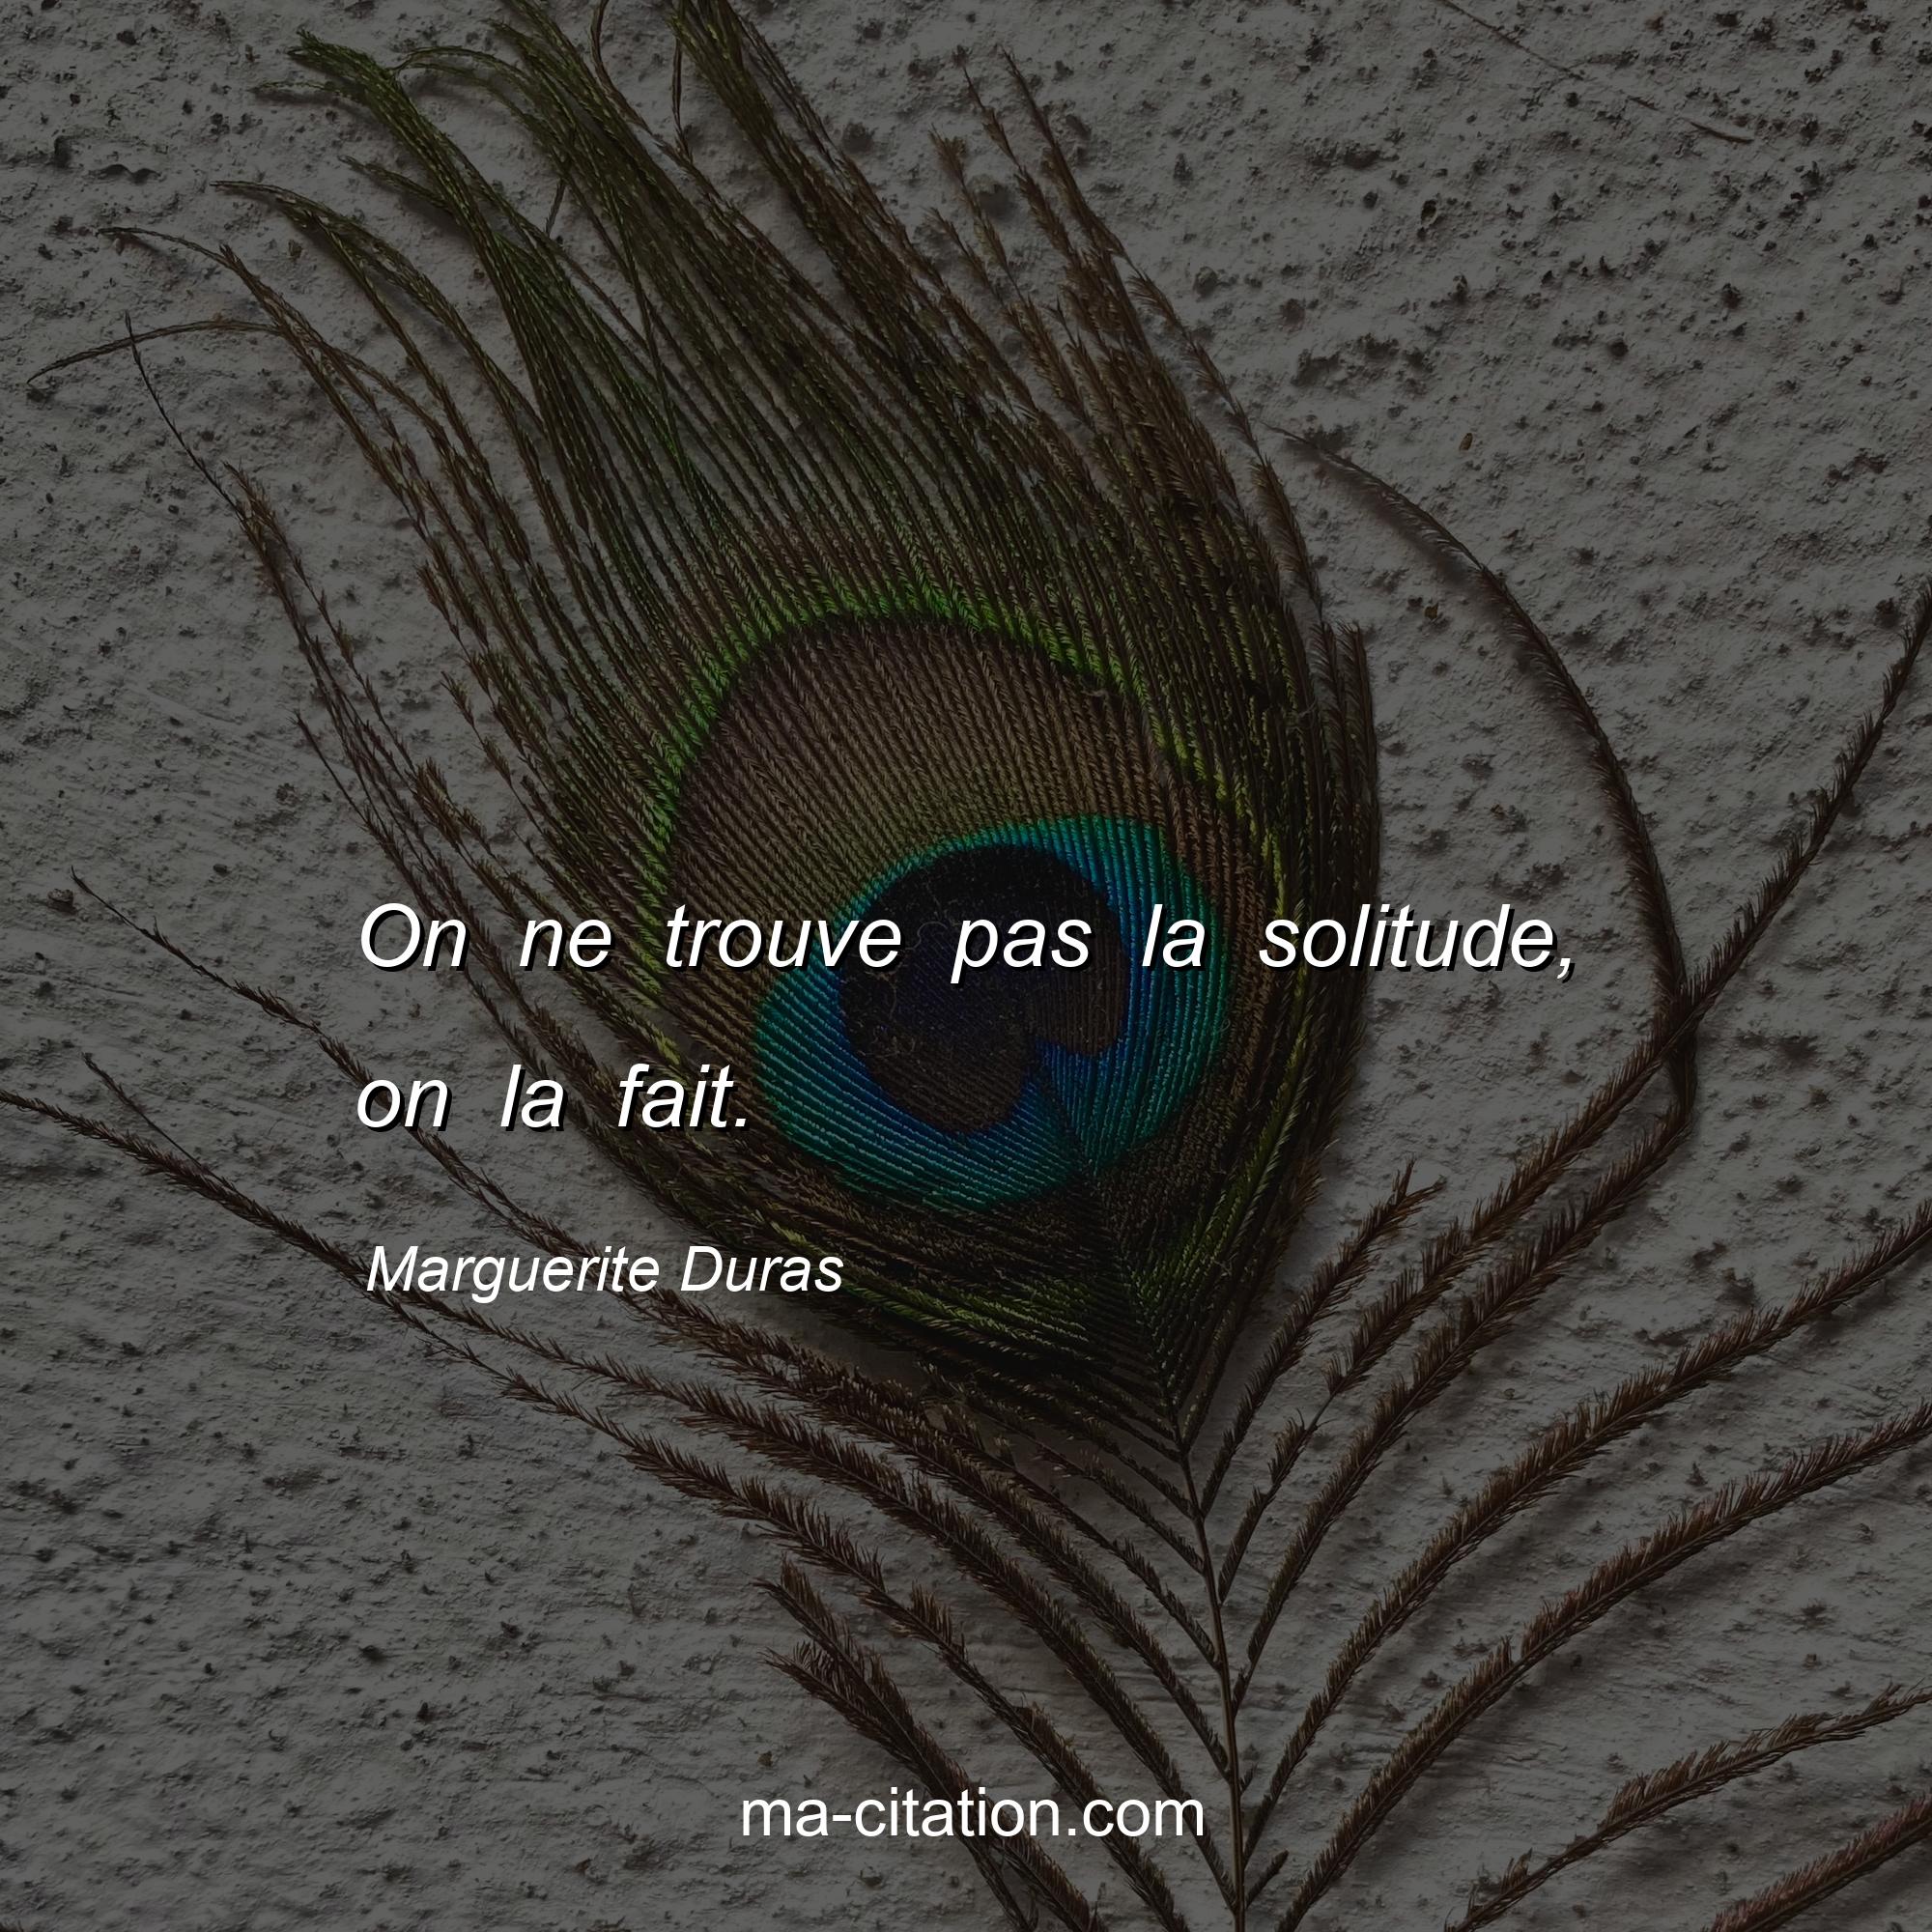 Marguerite Duras : On ne trouve pas la solitude, on la fait.